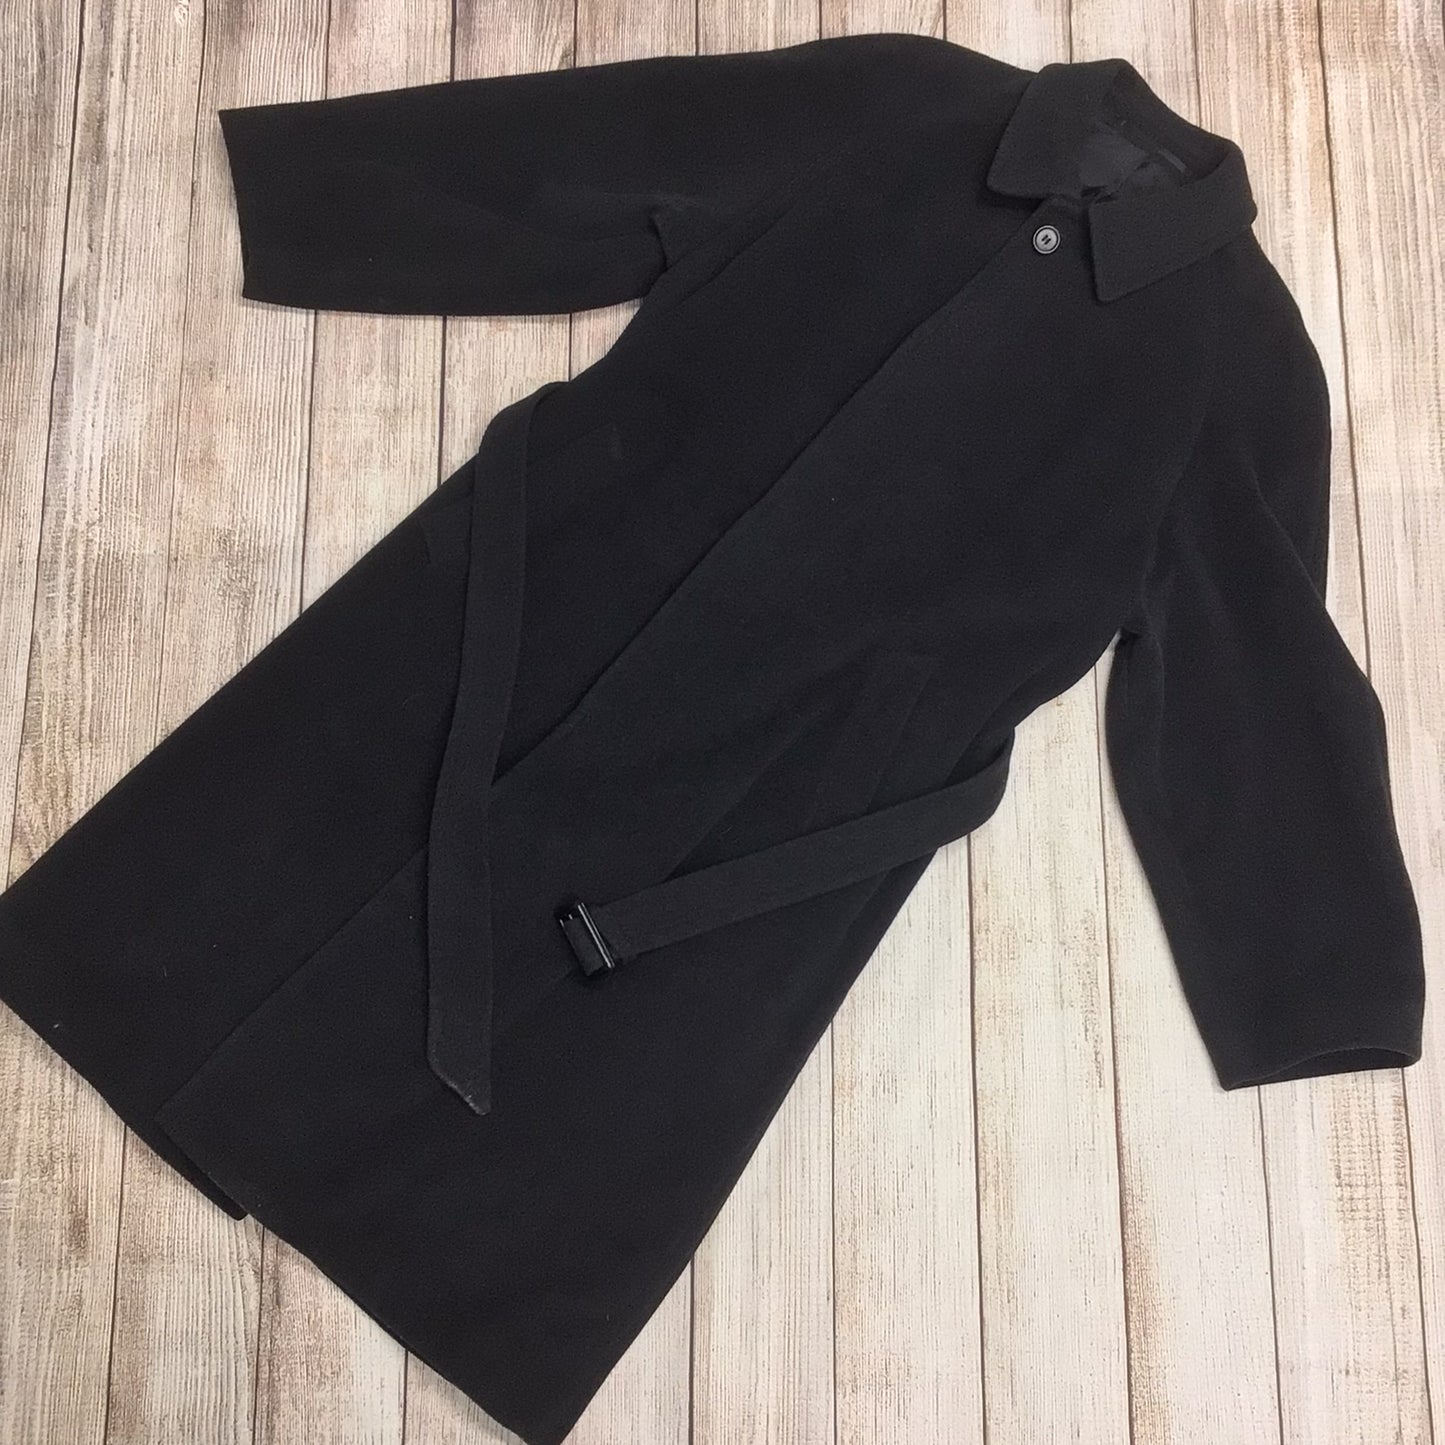 Kurt Geiger Dark Grey/Black Wool & Cashmere Blend Coat Size 40